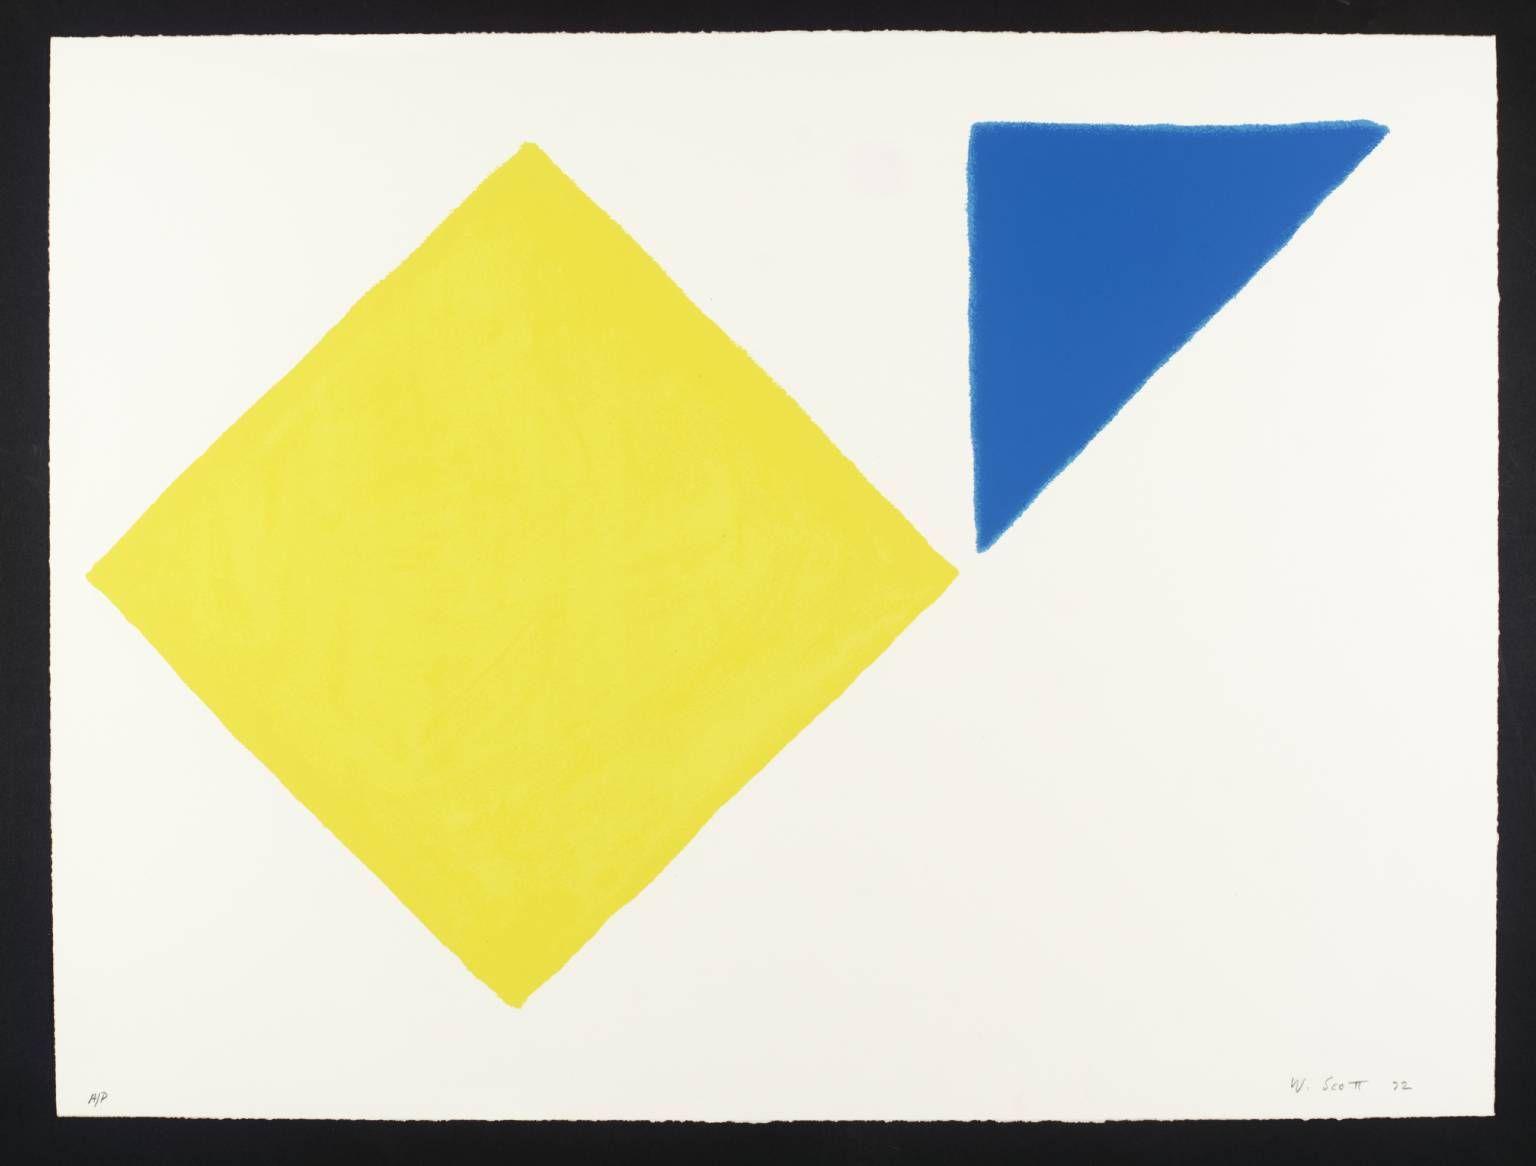 Blue and Yellow Square Logo - Yellow Square plus Quarter Blue', William Scott, 1972